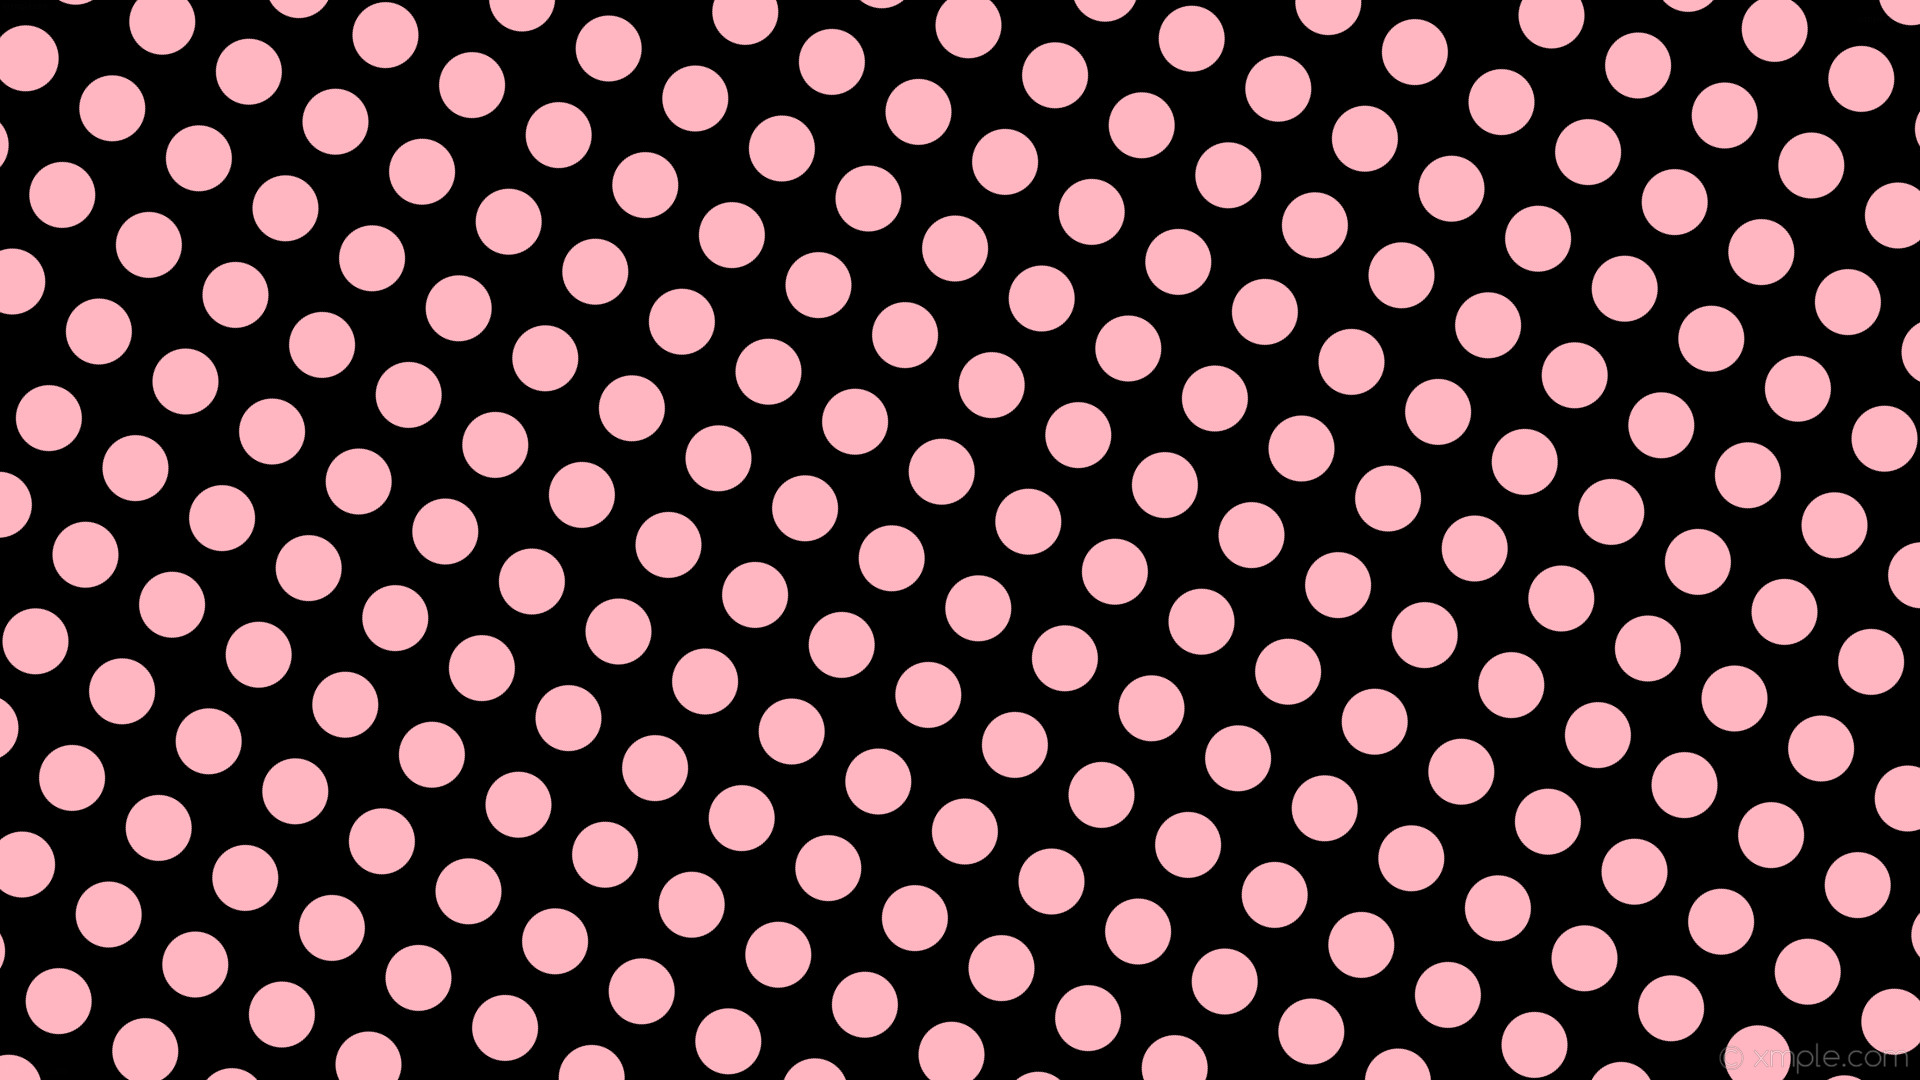 1920x1080 wallpaper spots black pink polka dots light pink #000000 #ffb6c1 330Â° 66px  100px